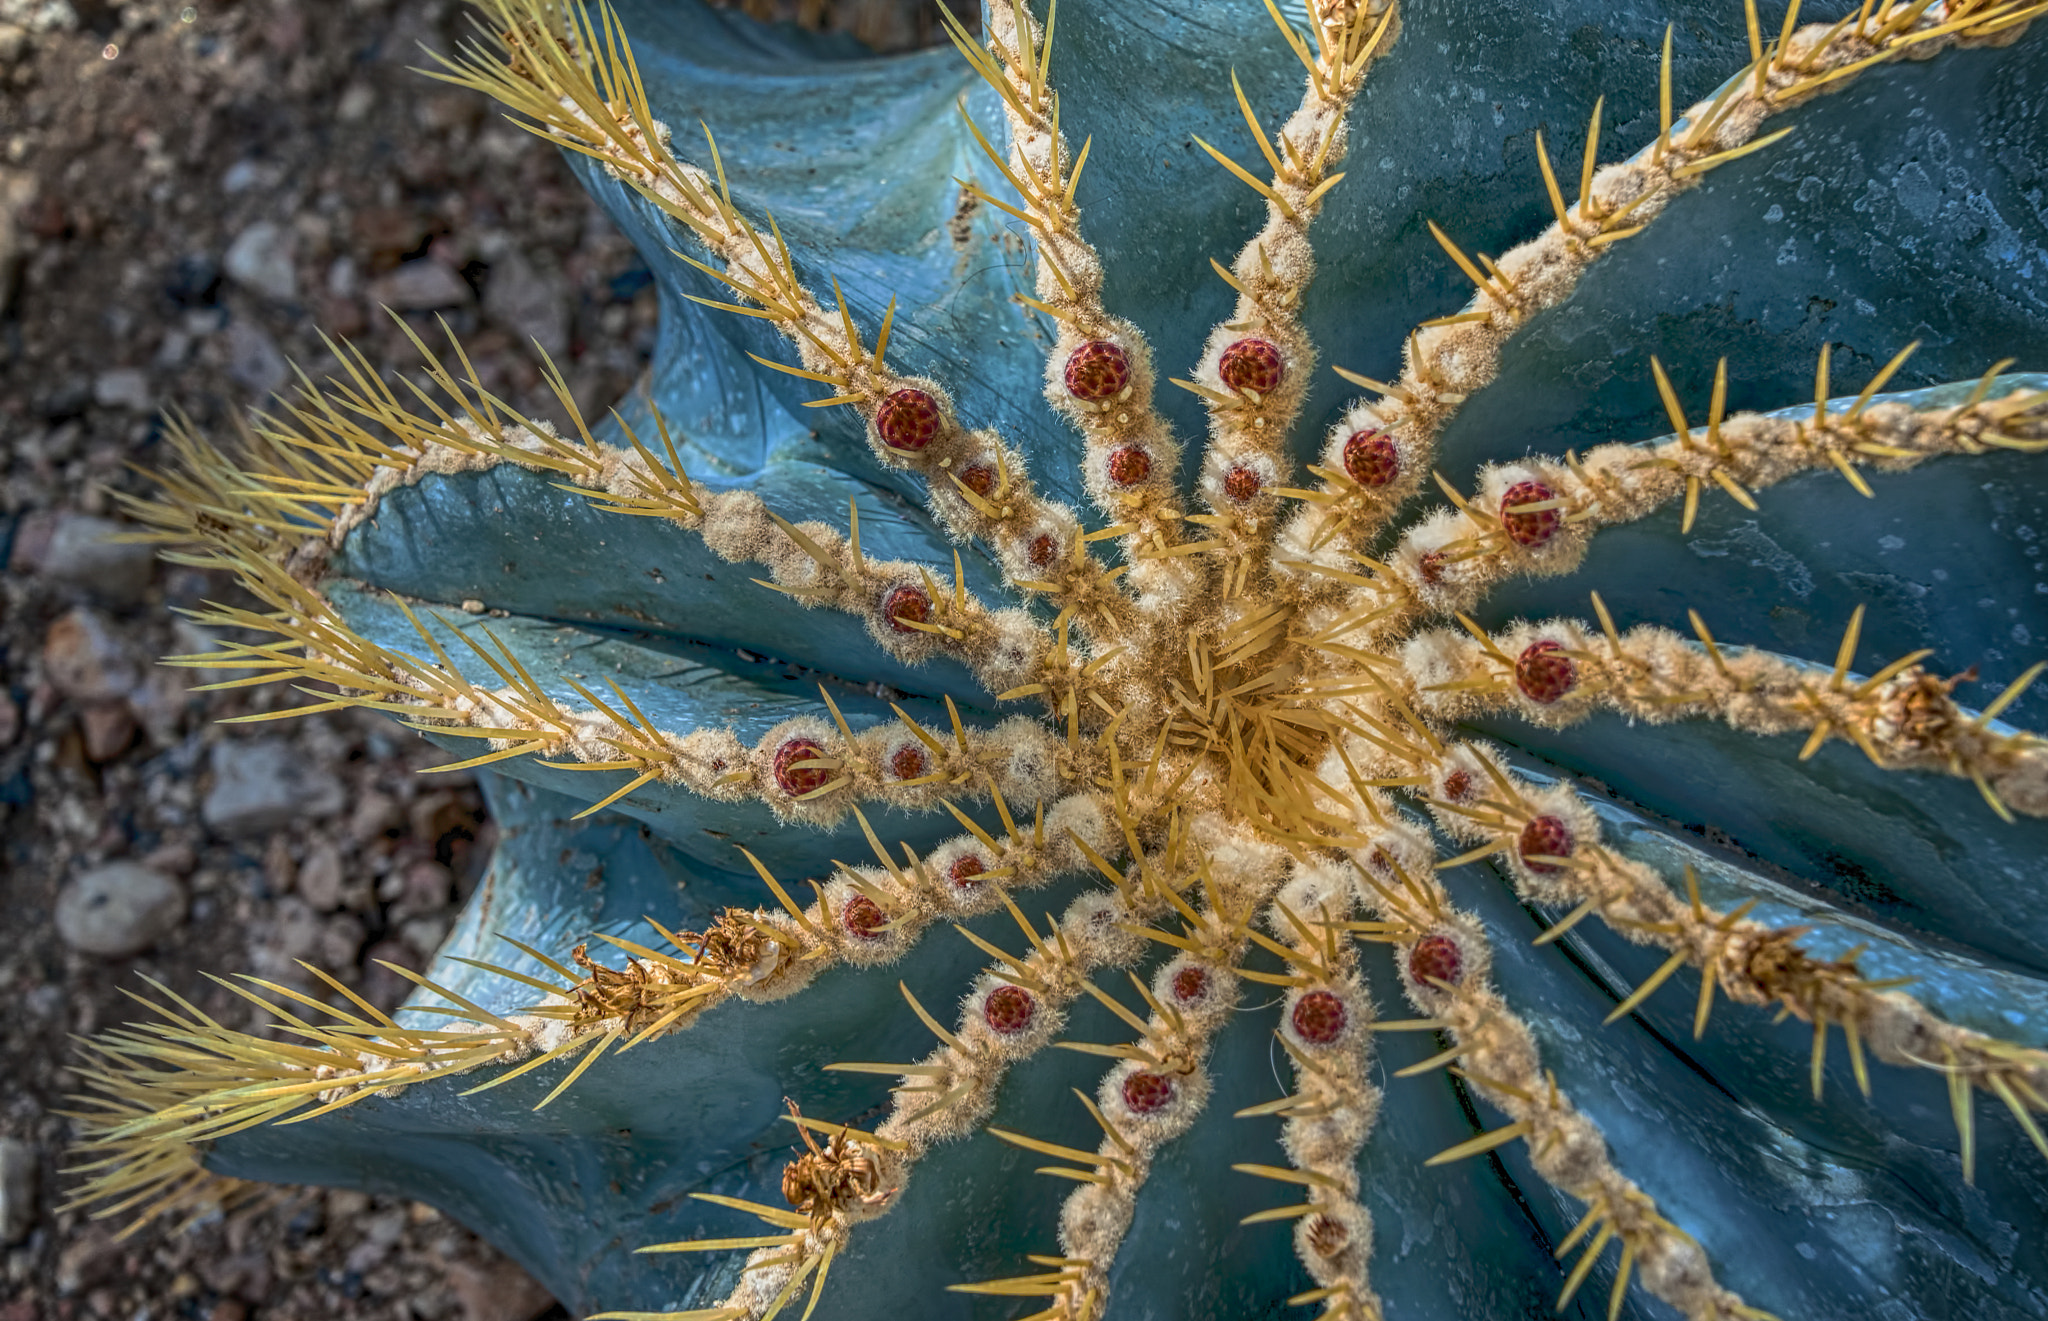 Nikon D90 sample photo. Cactus photography